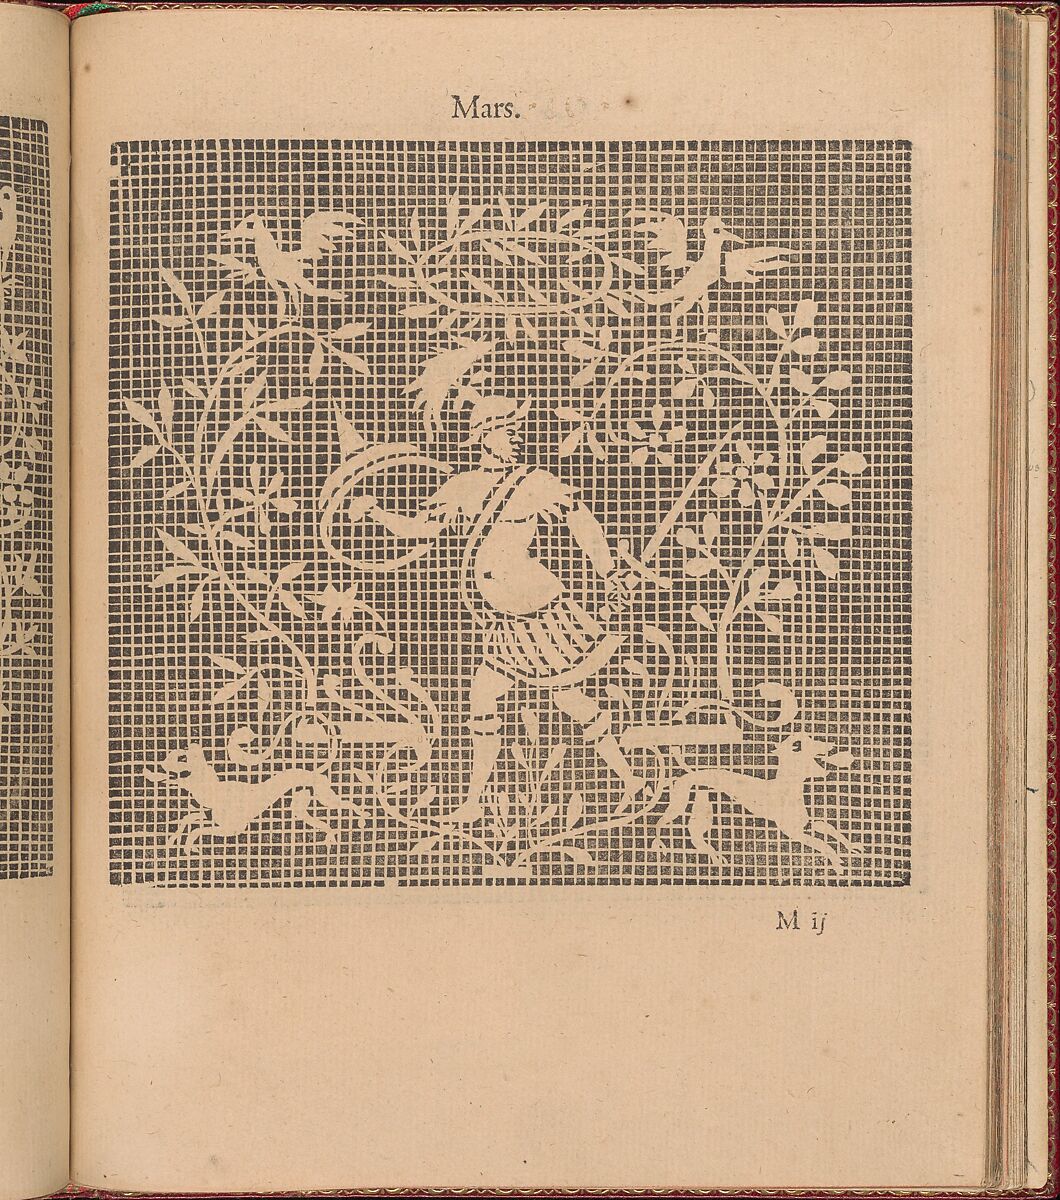 Les Singuliers et Nouveaux Portraicts... page 46 (recto), Federico de Vinciolo (Italian, active Paris, ca. 1587–99), Woodcut 